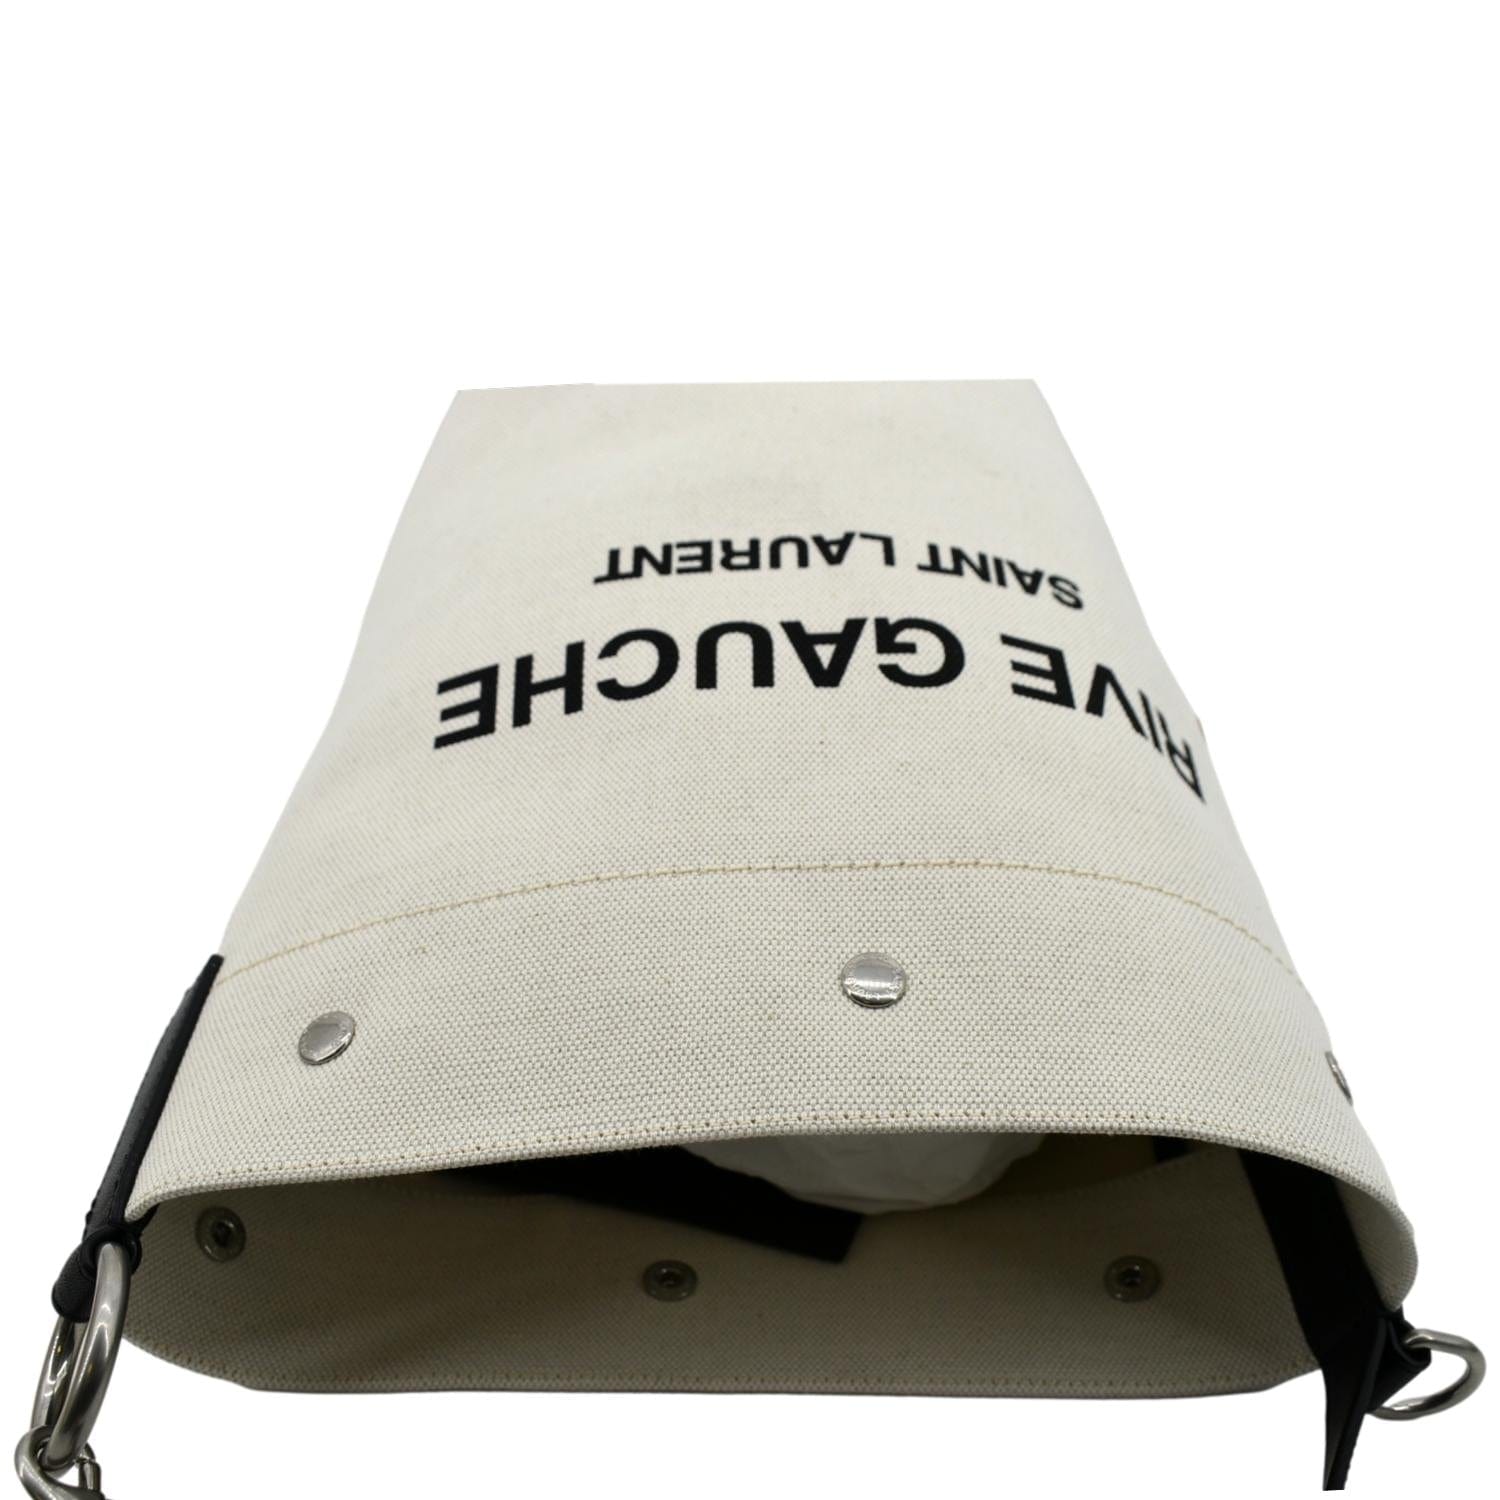 Yves Saint Laurent Rive Gauche Linen Bucket Bag White